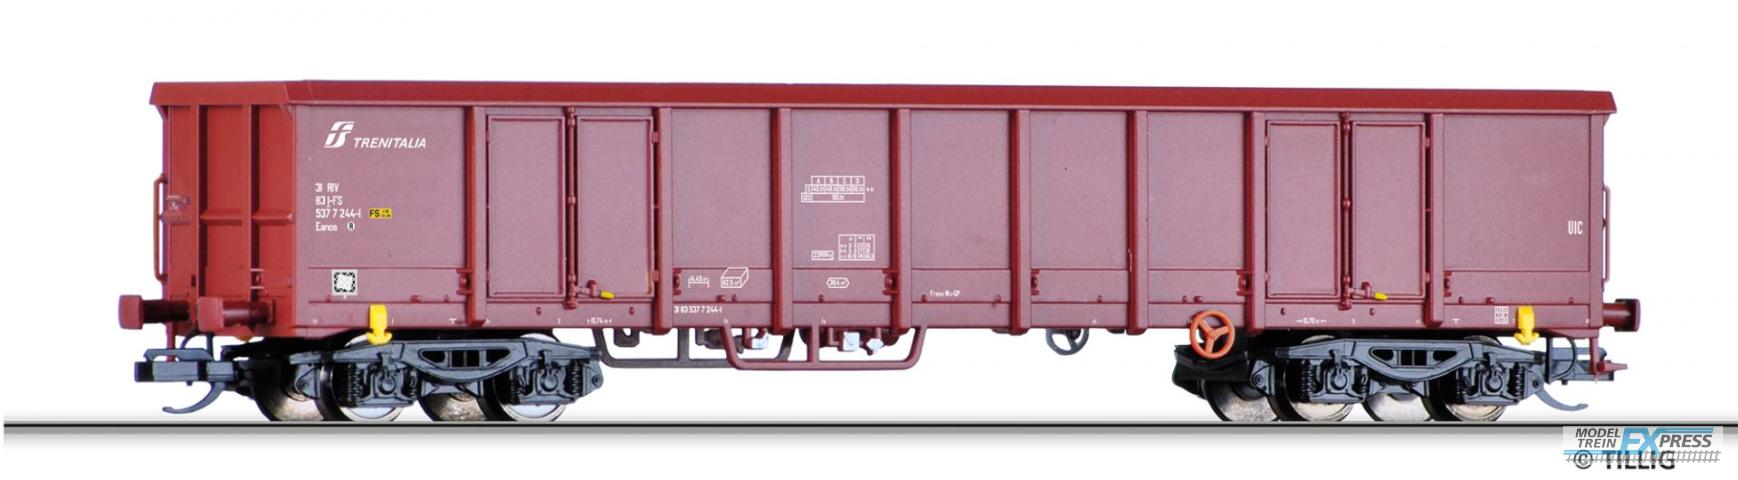 Tillig 15674 Offener Güterwagen Eanos der FS Trenitalia, Ep. VI